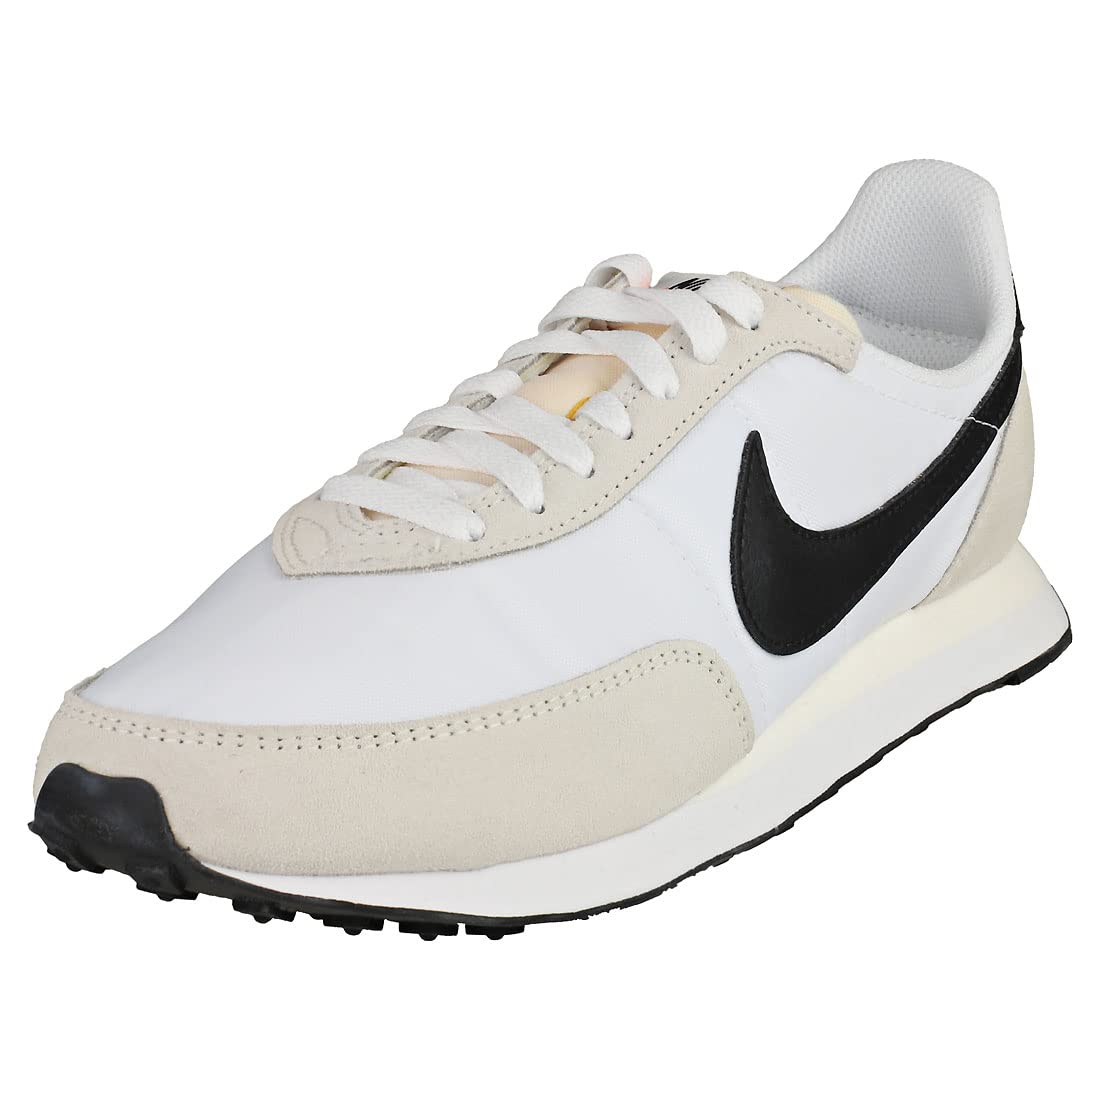 Bạn là tín đồ của nhãn hàng Nike? Khám phá chiếc giày Nike Mens Waffle Trainer 2 DH1349 100 với màu trắng và đen đầy phong cách và thể hiện đẳng cấp của mình. Ghé đến cửa hàng của chúng tôi ngay hôm nay để sở hữu những đôi giày tuyệt đẹp này!